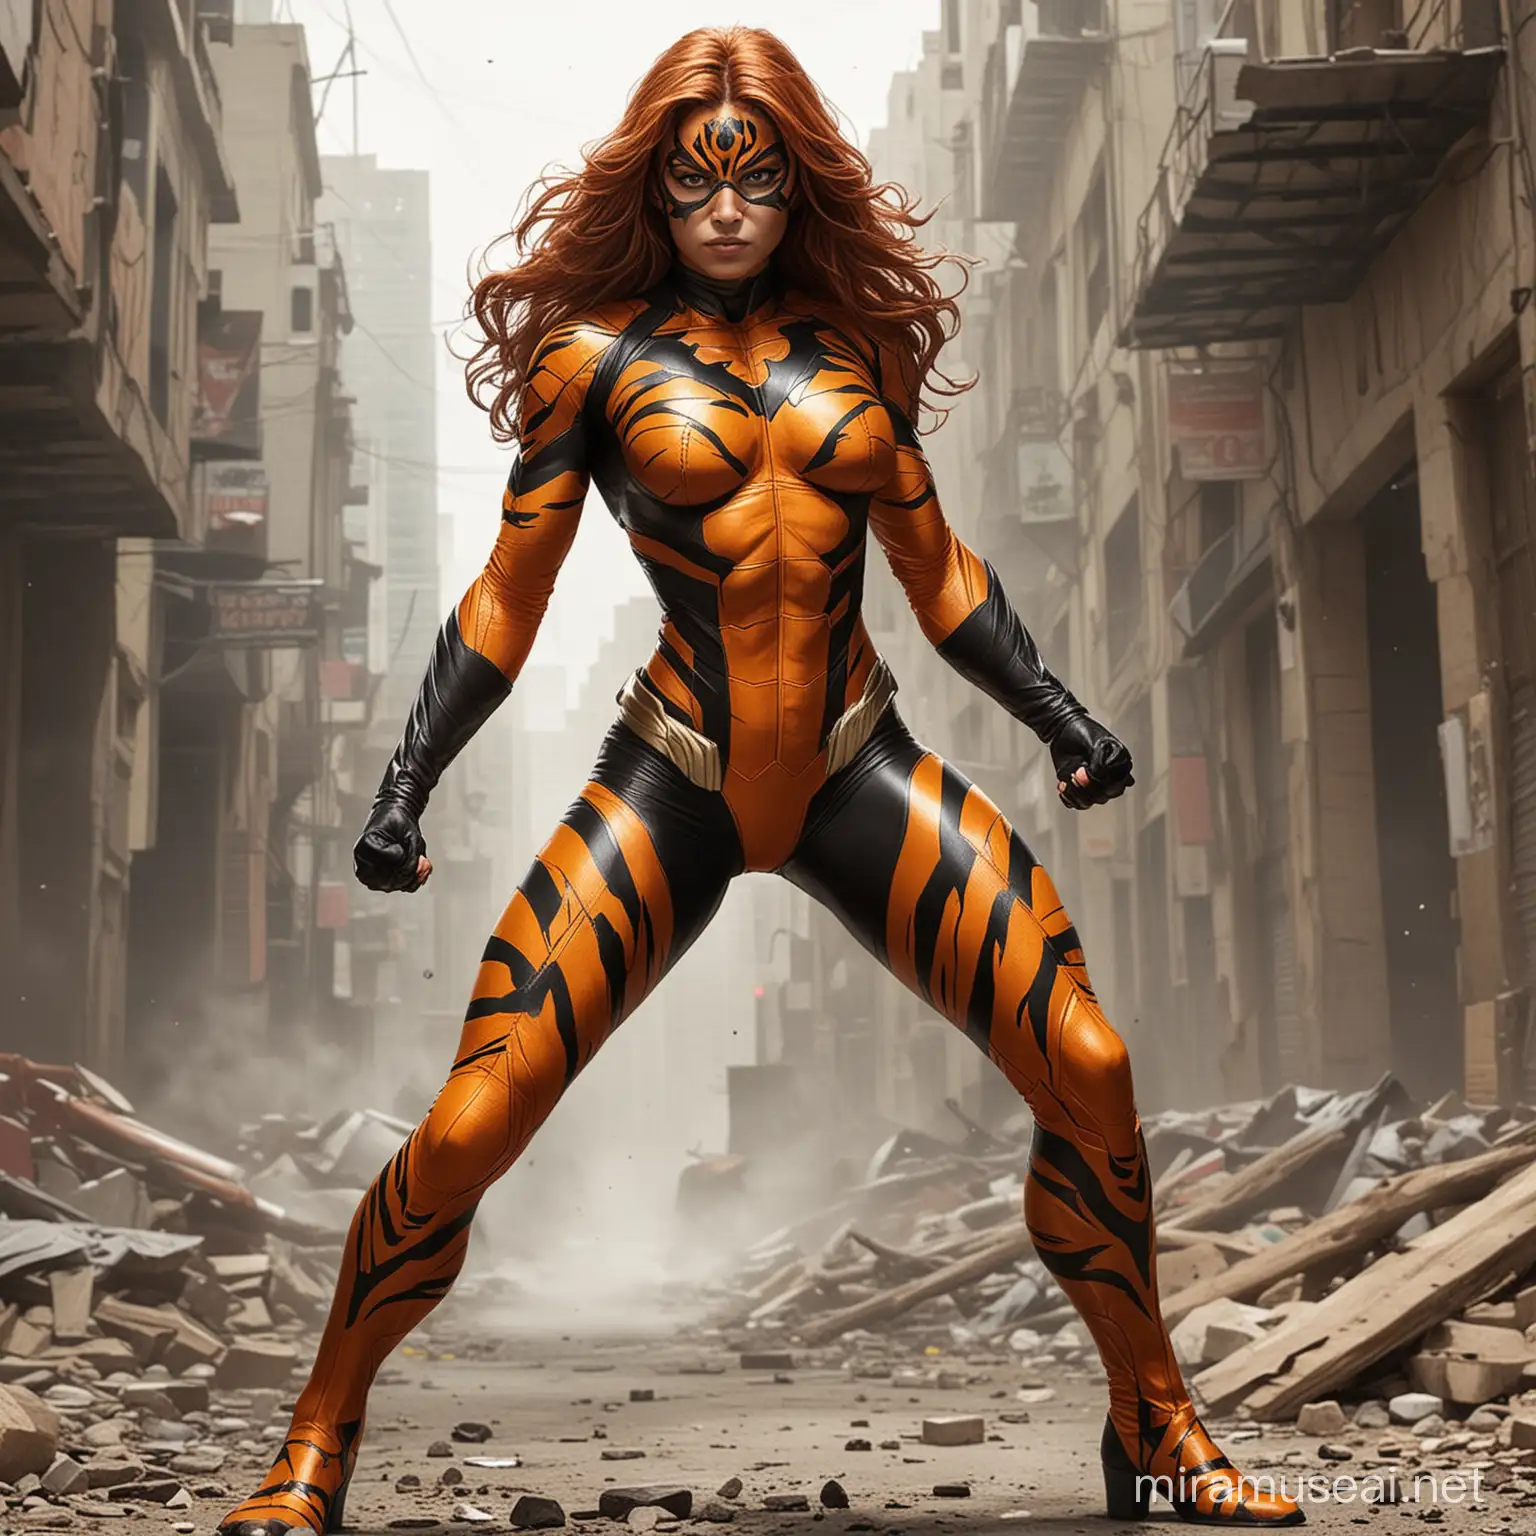 Nuovo super eroe femminile dal nome Tiger woman che si vede tutto il corpo della testa ai piedi
